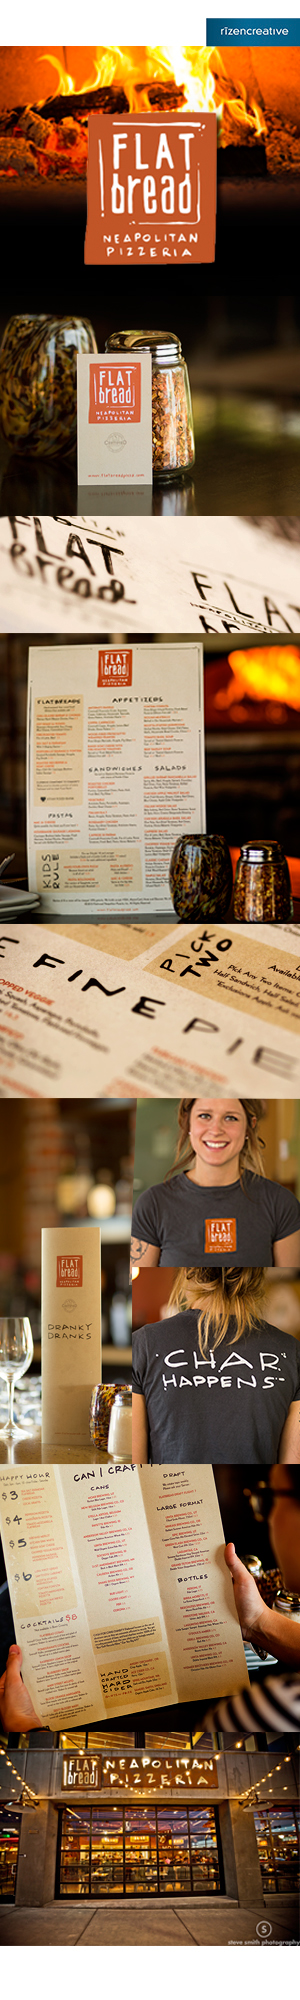 restaurant Pizza design menu typography design restaurant identiy